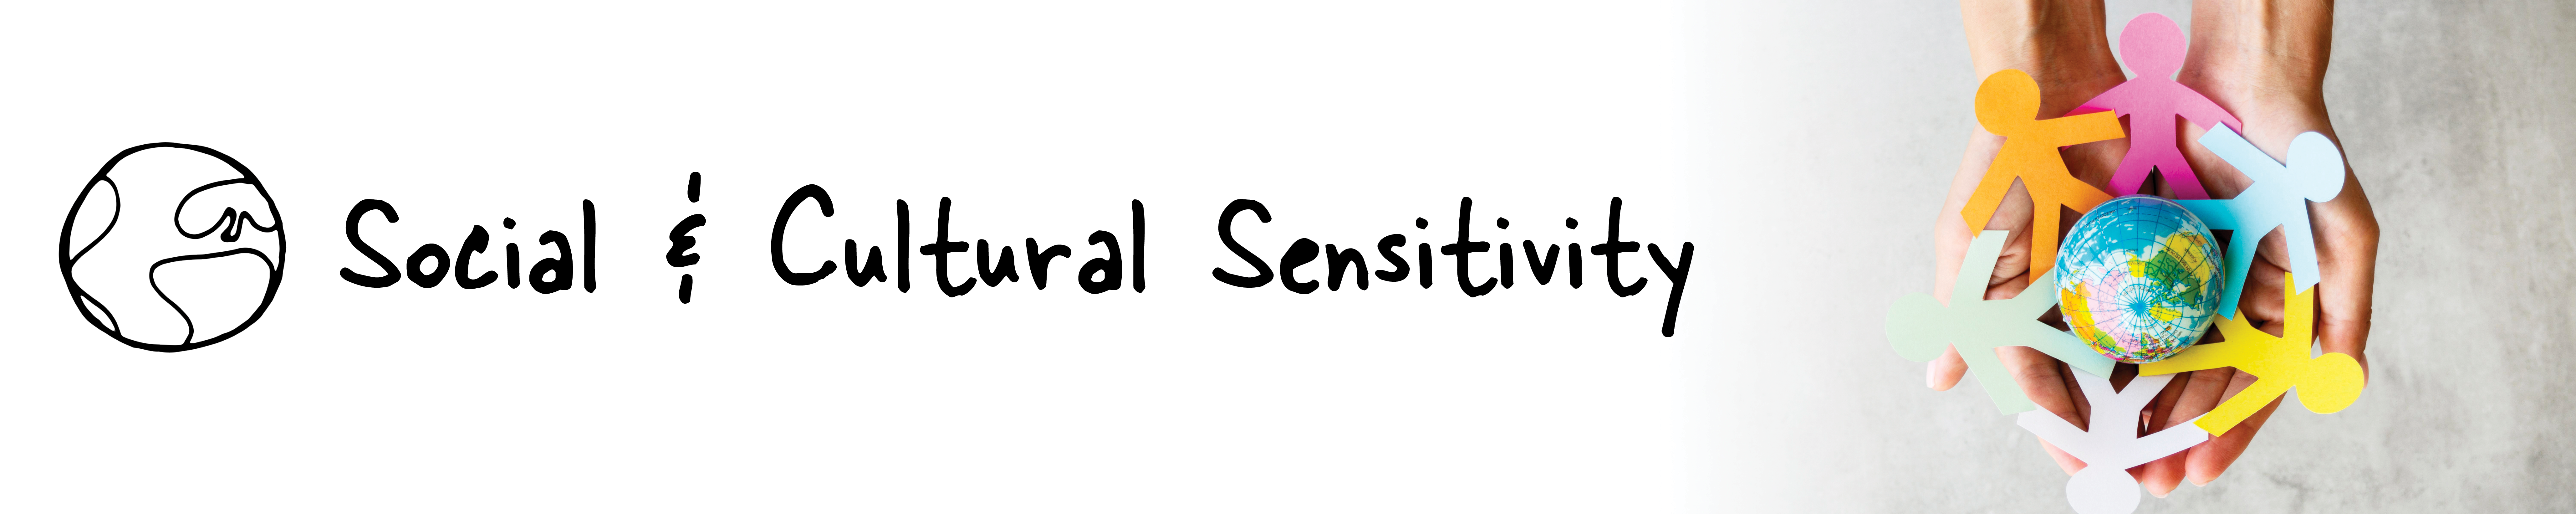 Social & Cultural Sensitivity